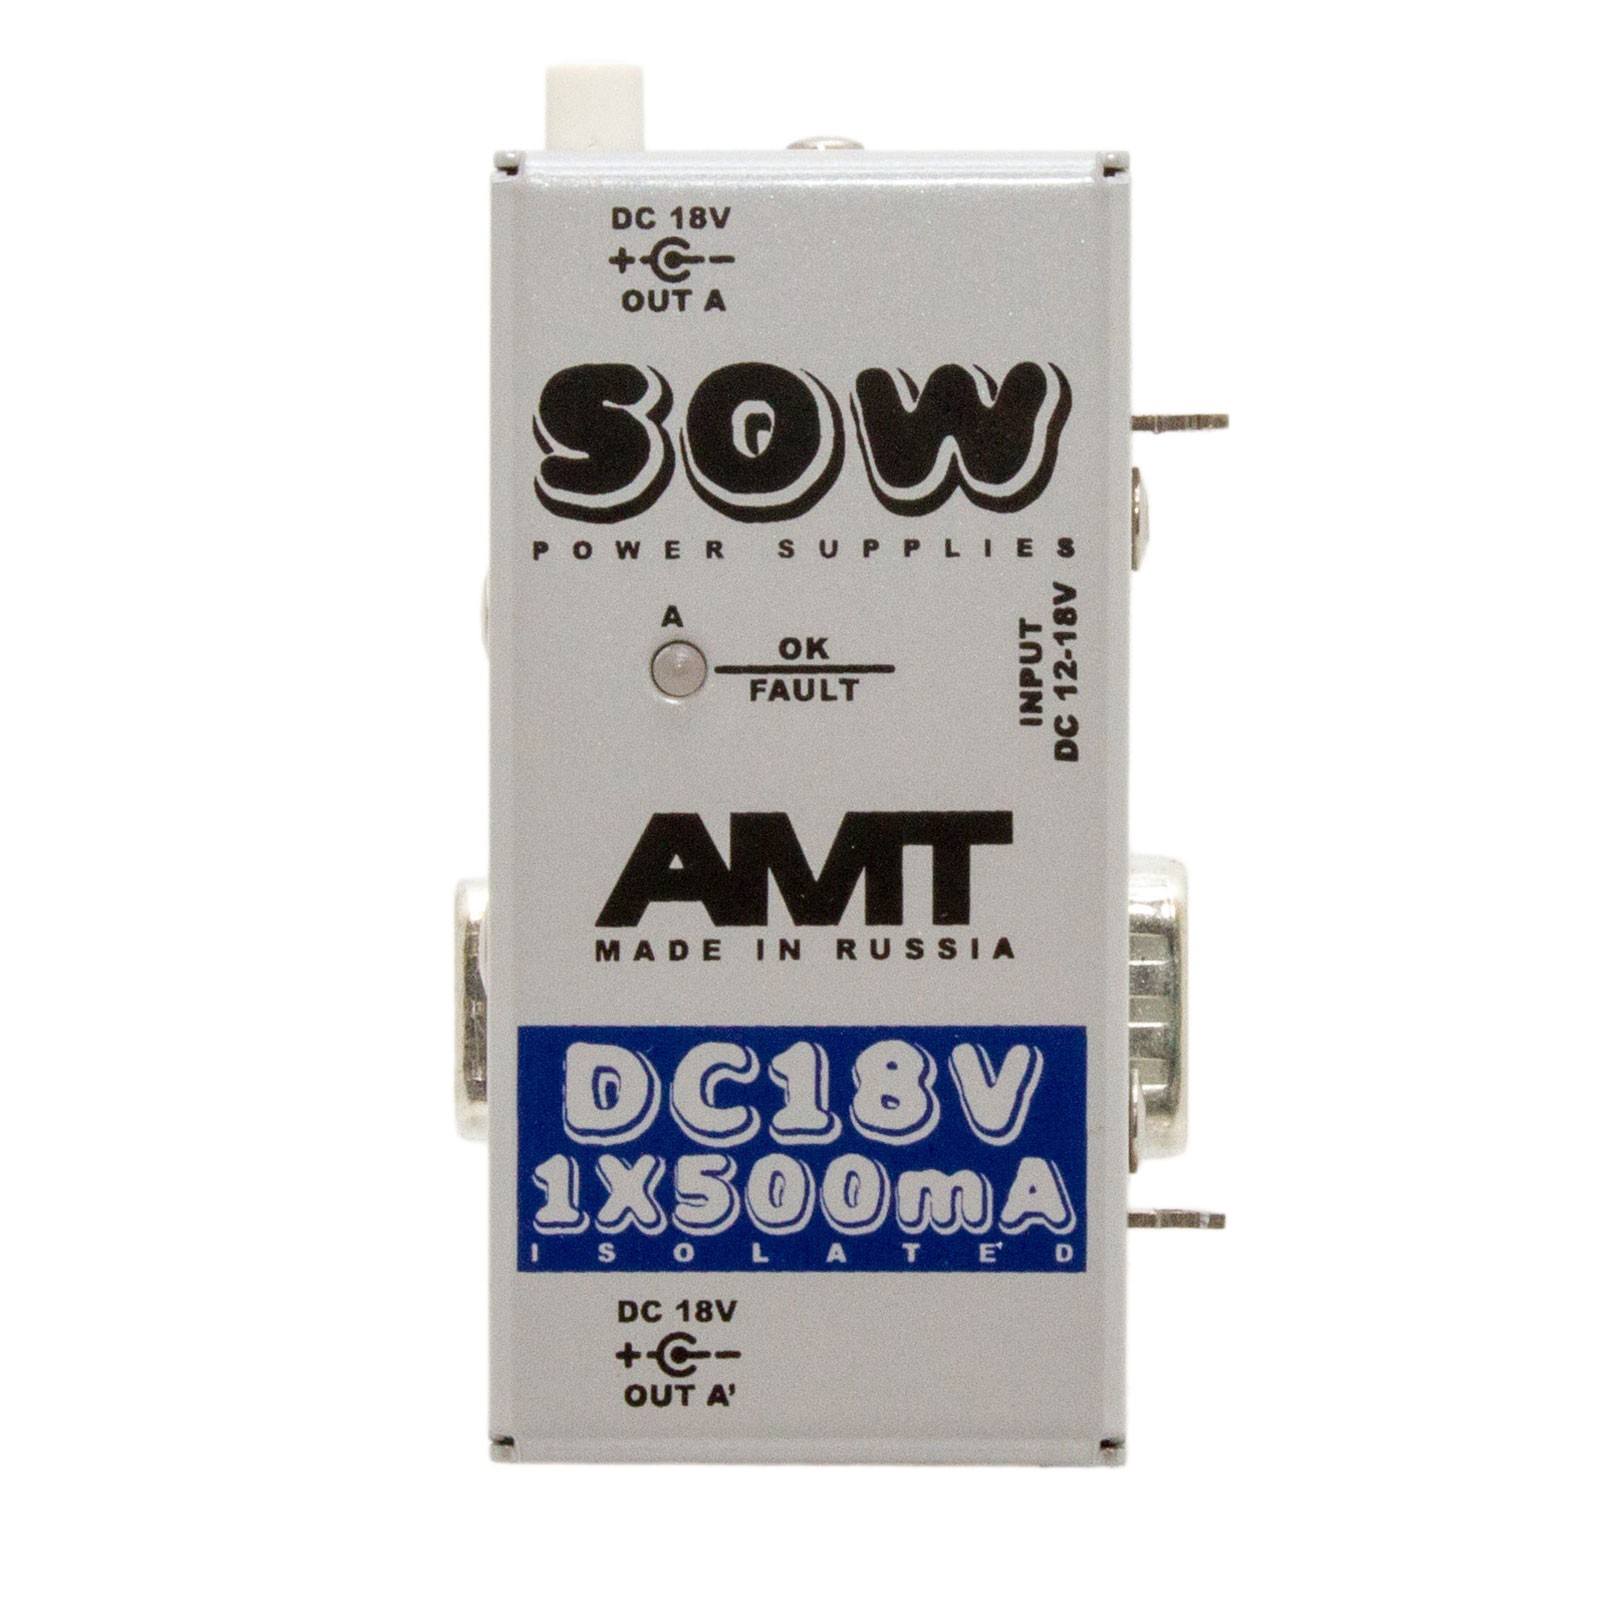 PS 18-1  Модульный блок питания AMT SOW module 181, 18VDC 1*500mA